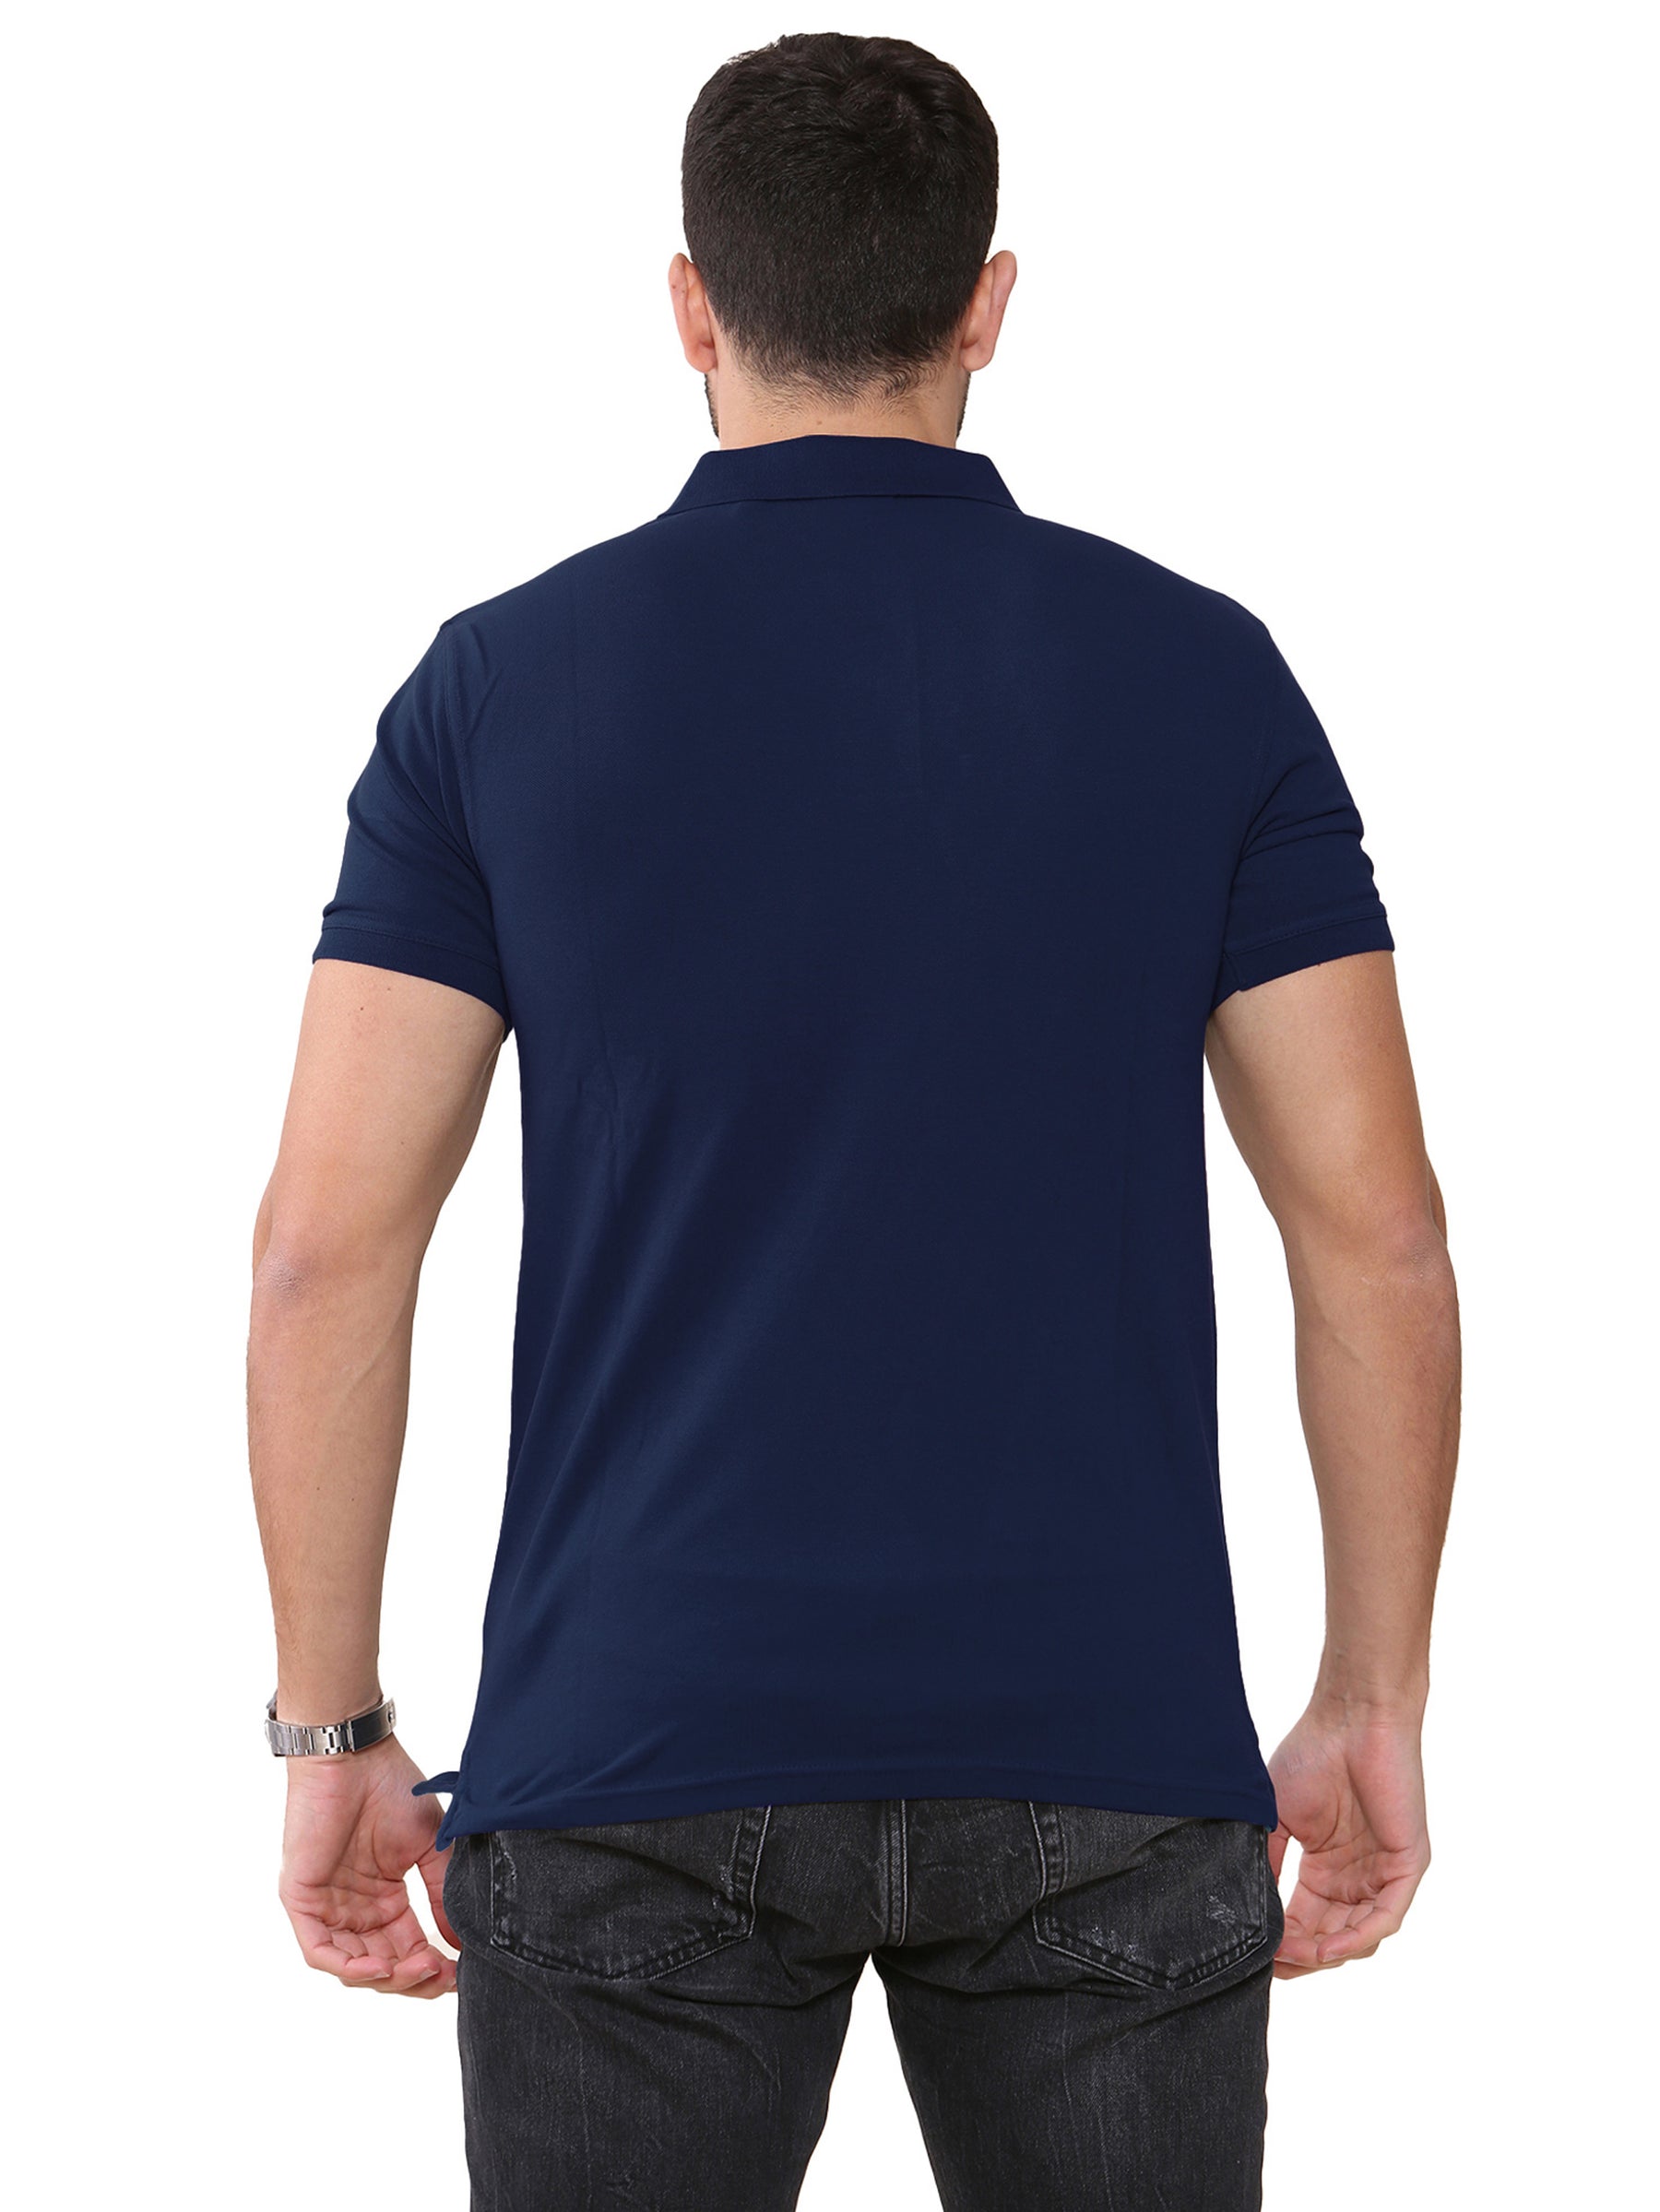 GANT_POLO_CNTR Gant | Mens Contrast Collar Polo Shirt GANT RAWDENIM